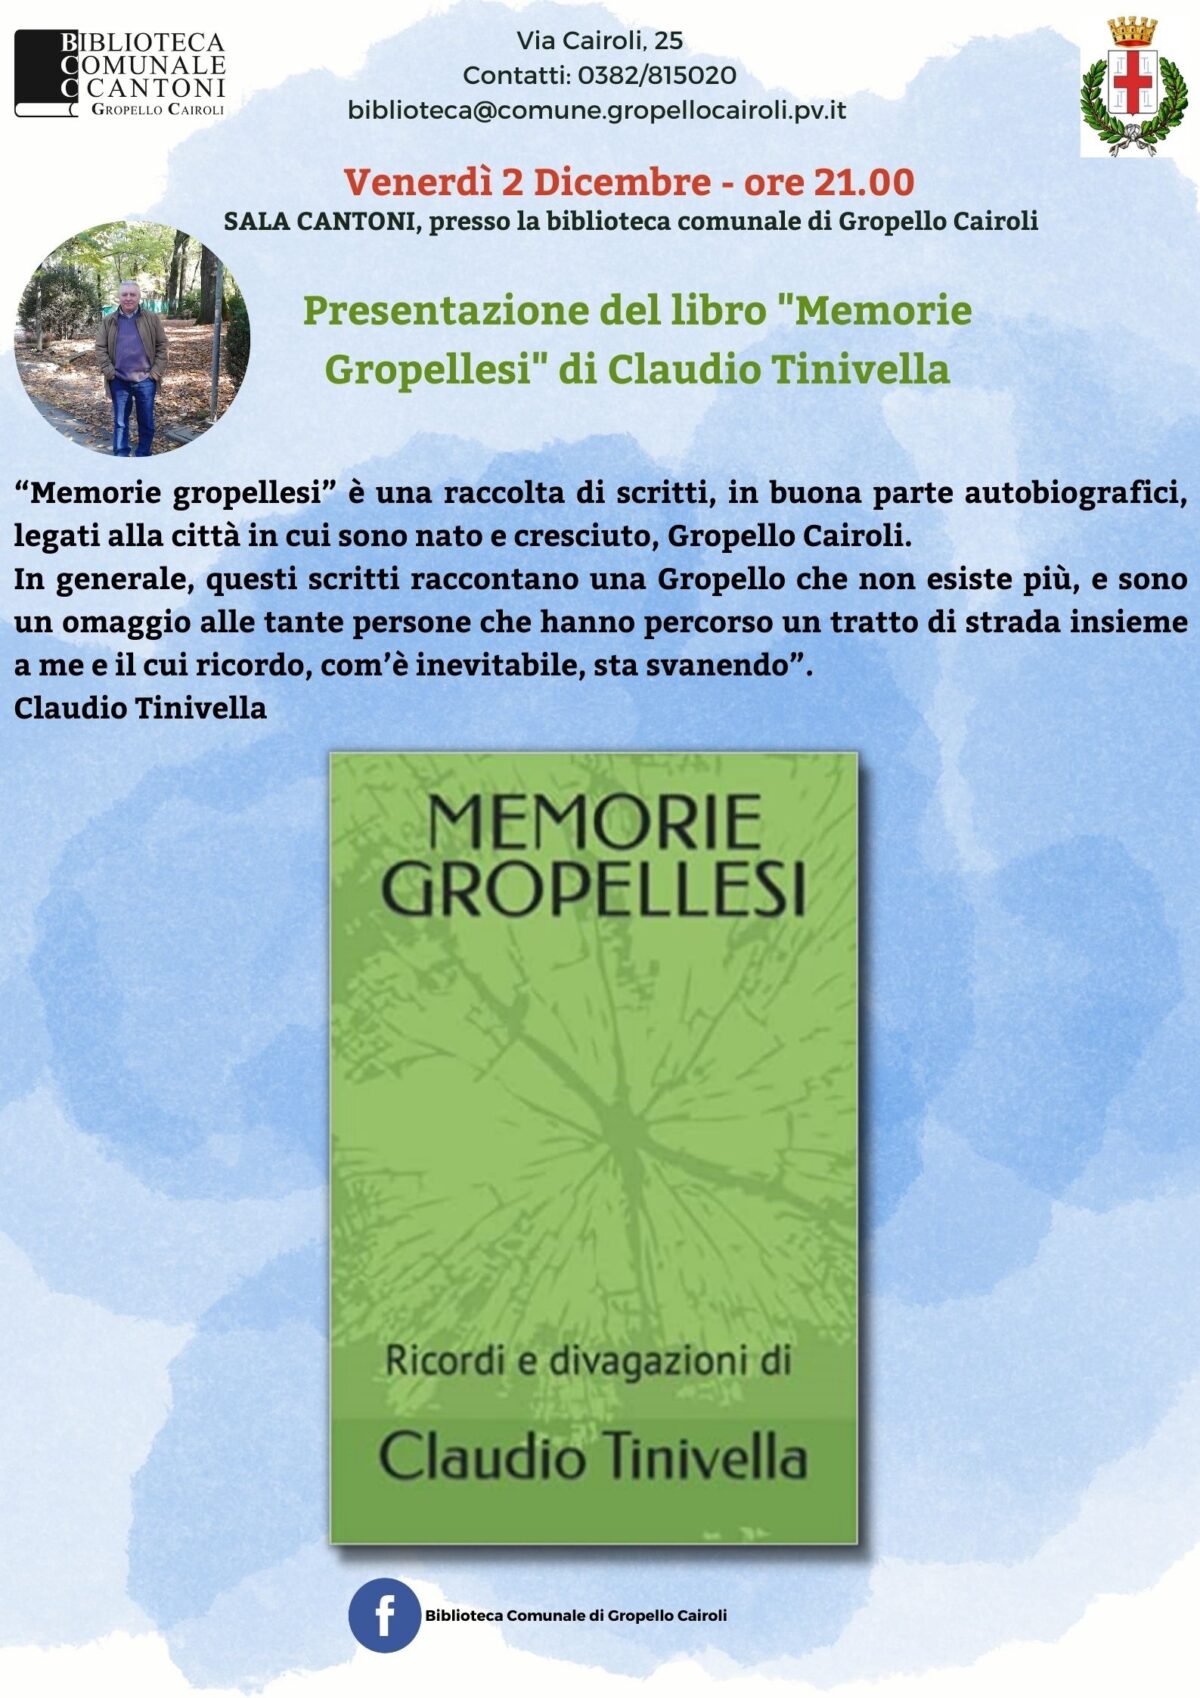 Presentazione del libro “Memorie gropellesi” di Claudio Tinivella venerdì 2 dicembre ore 21,00 – Sala Cantoni